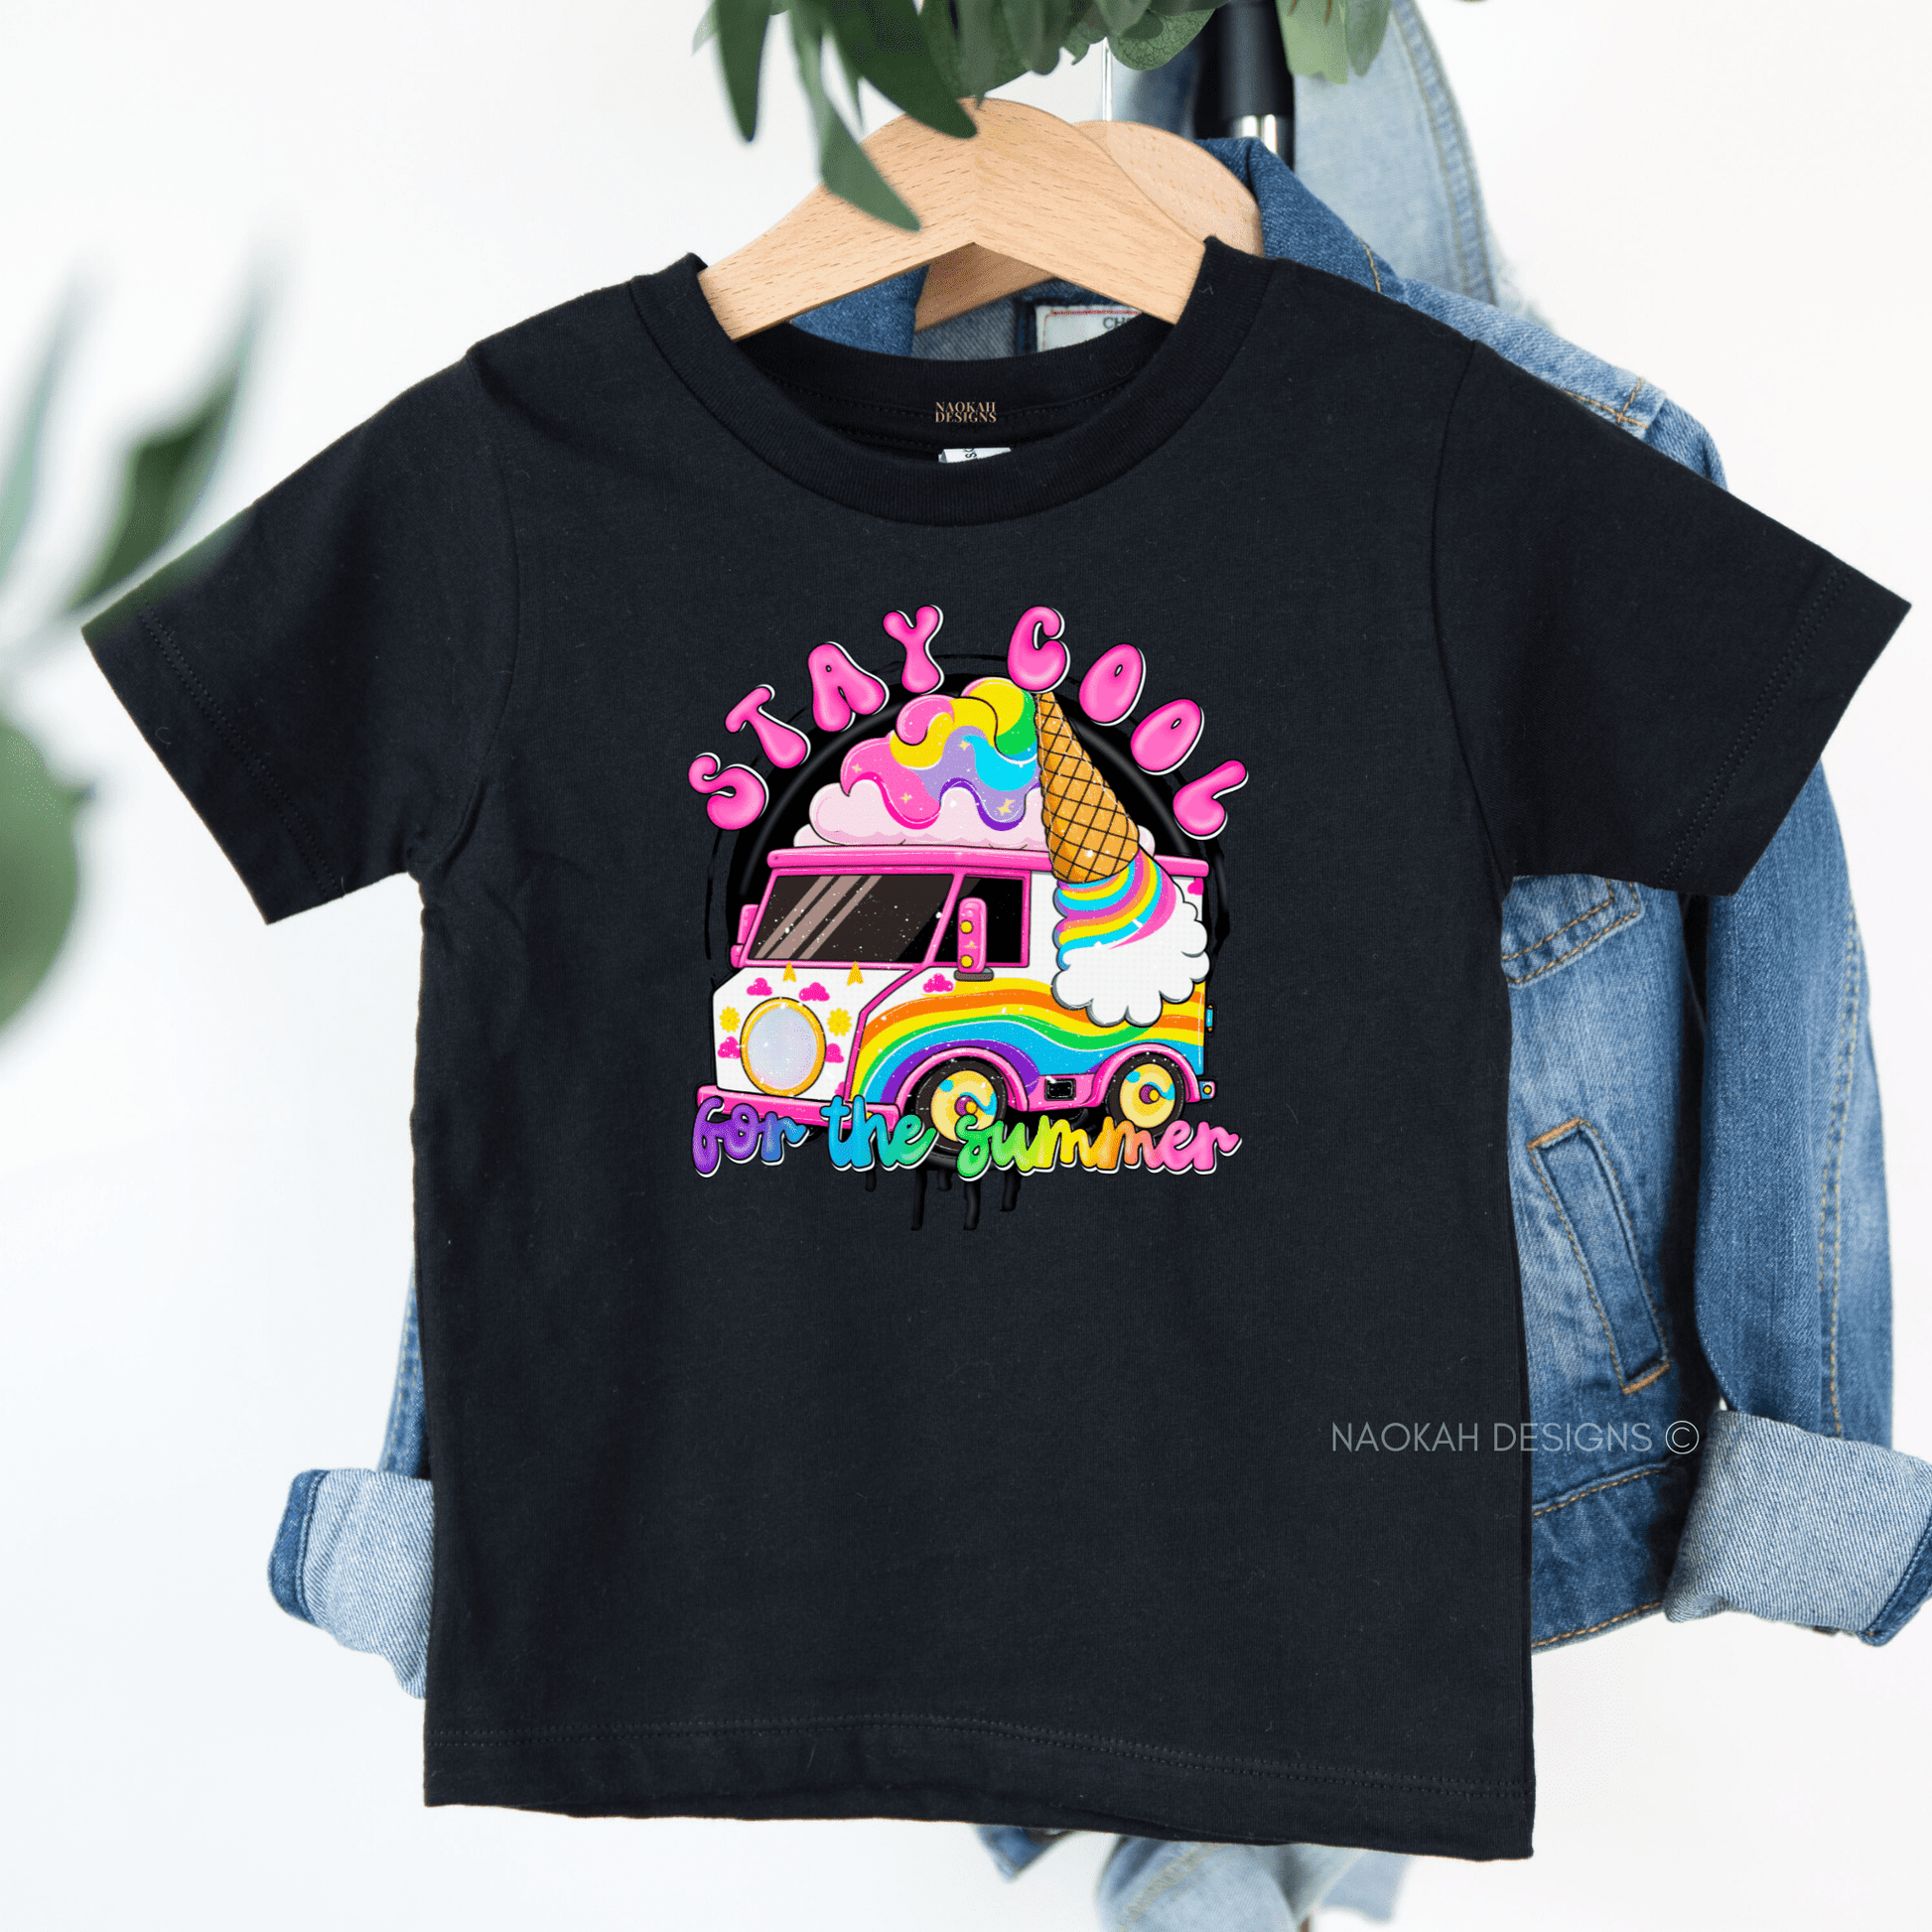 Stay Cool Kids Ice Cream Shirt, Ice Cream Youth T-Shirt, Ice Cream Lovers T-Shirt, Ice Cream Toddler Shirt, Summer Kids Shirt